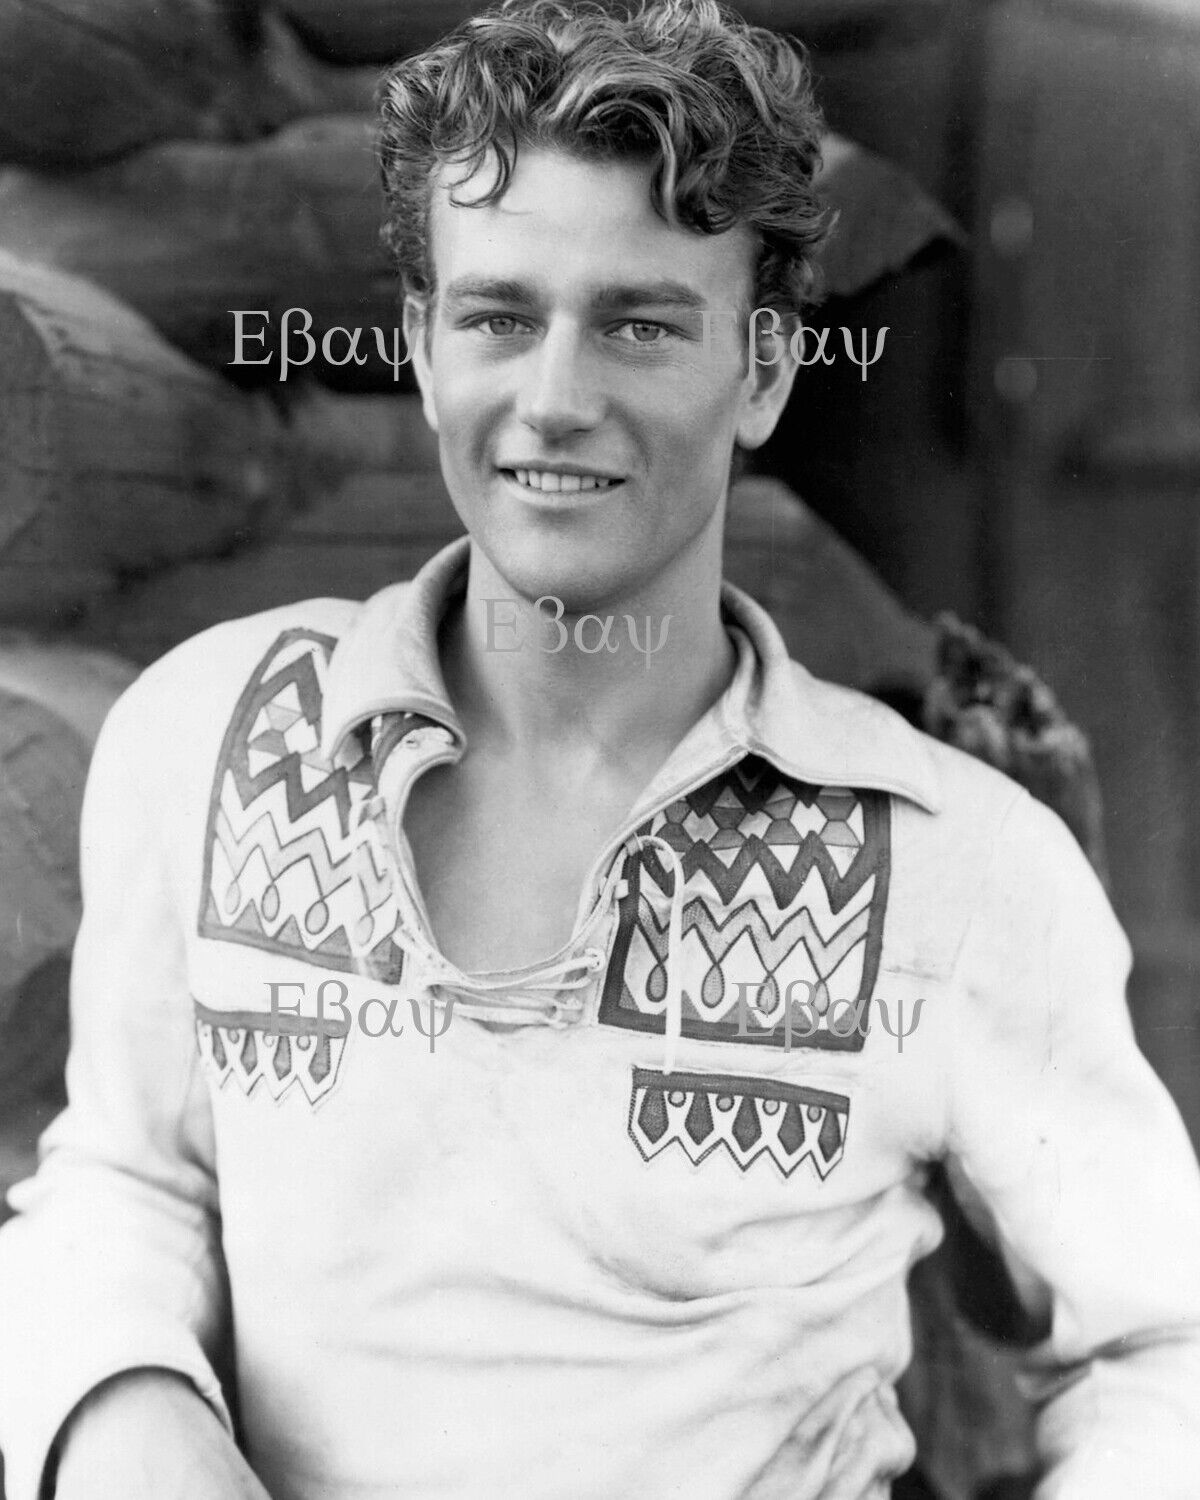 John Wayne, 1930s - Actor 8X10 Photo Reprint